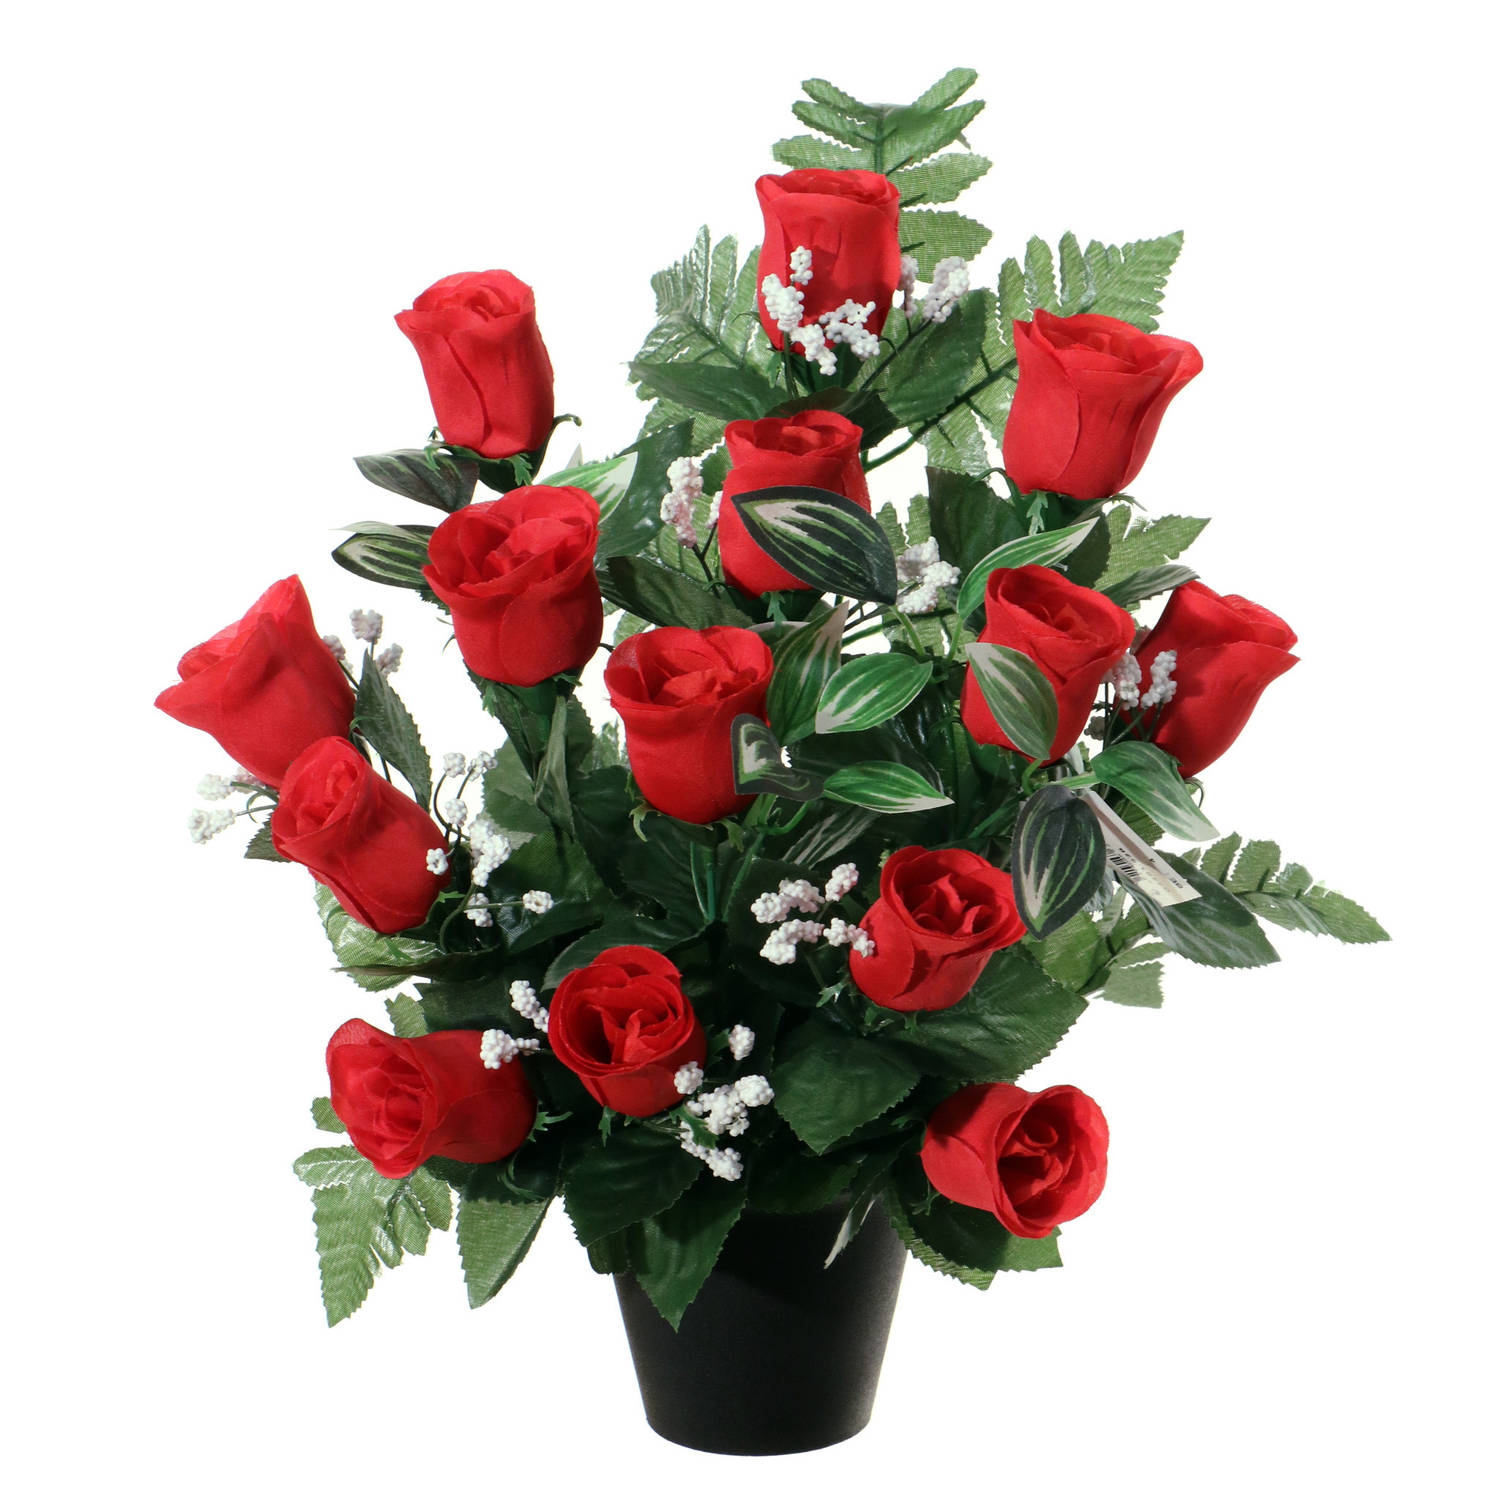 Louis Maes Kunstbloemen in pot - rood - H35 cm - Bloemstuk ornament - rozen/gipskruid met bladgroen